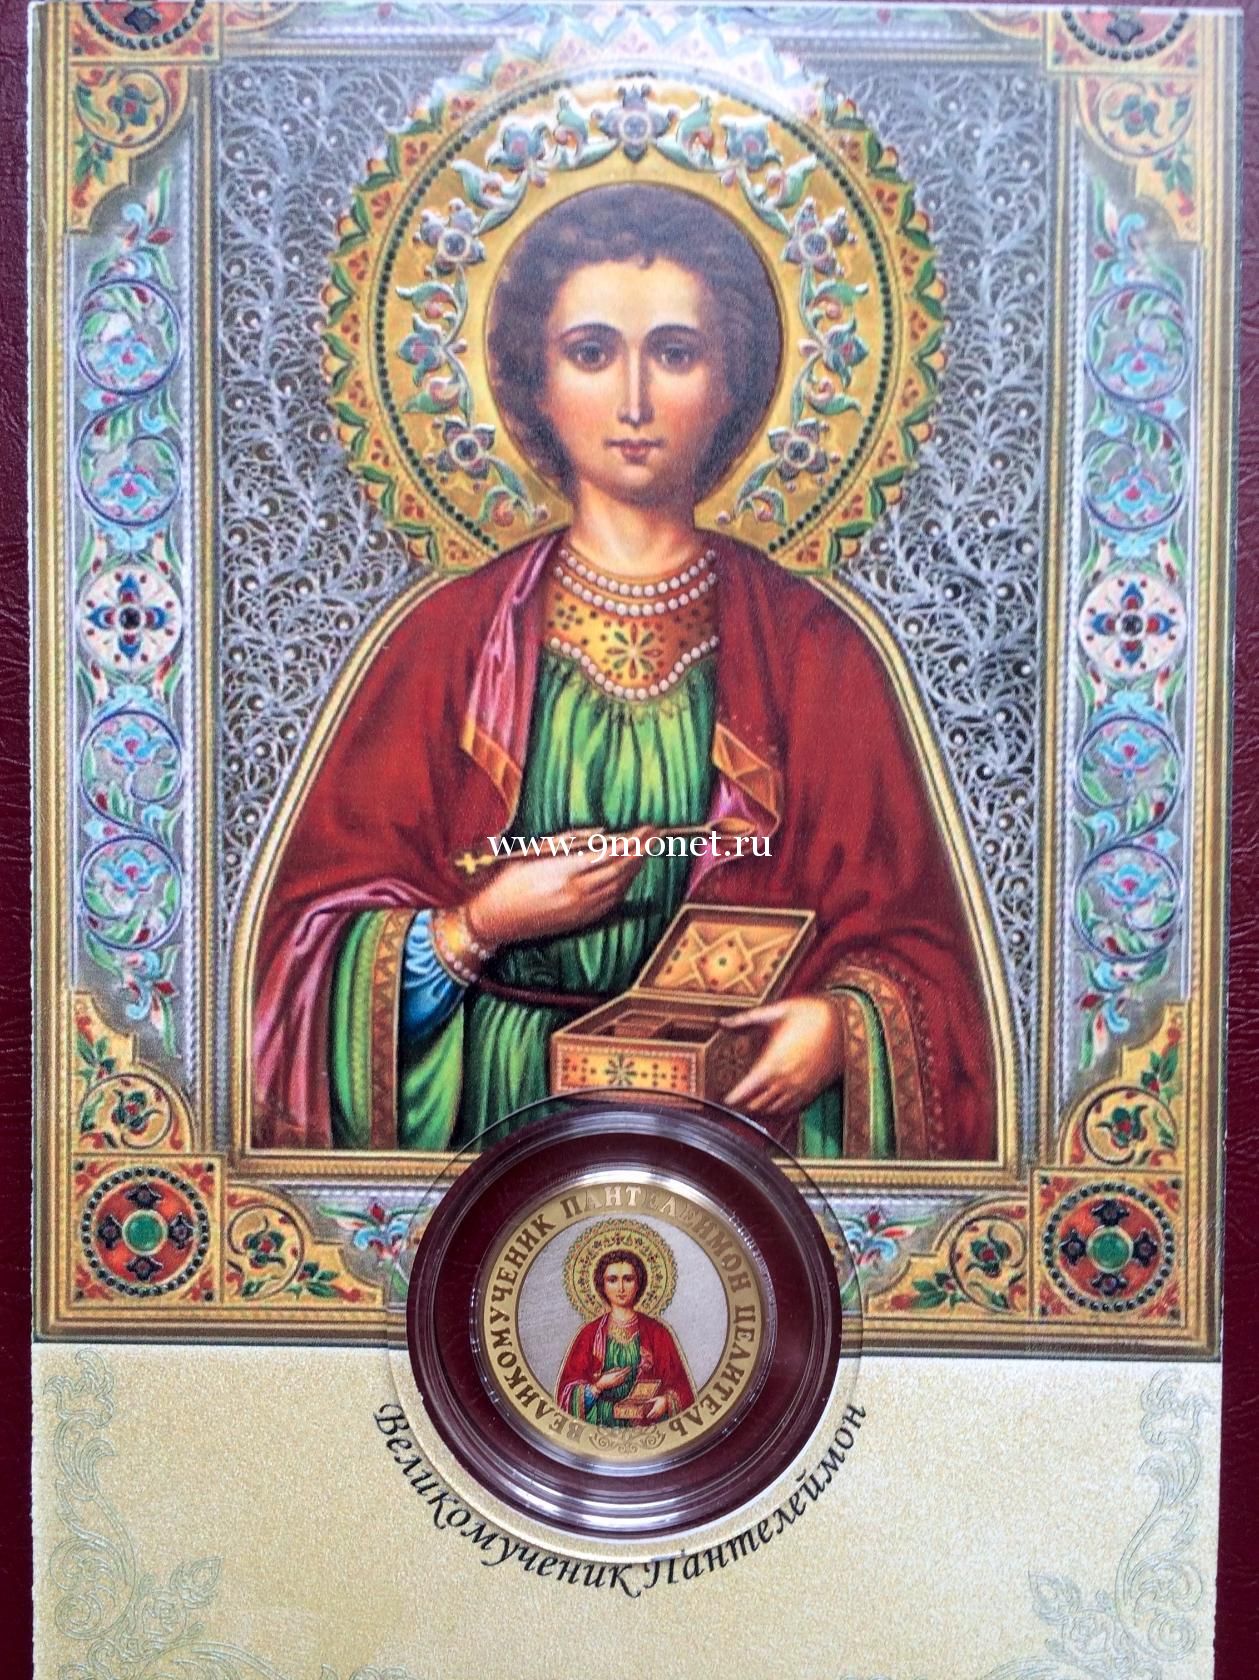 Сувенирная монета 10 рублей Великомученик Пантелеймон